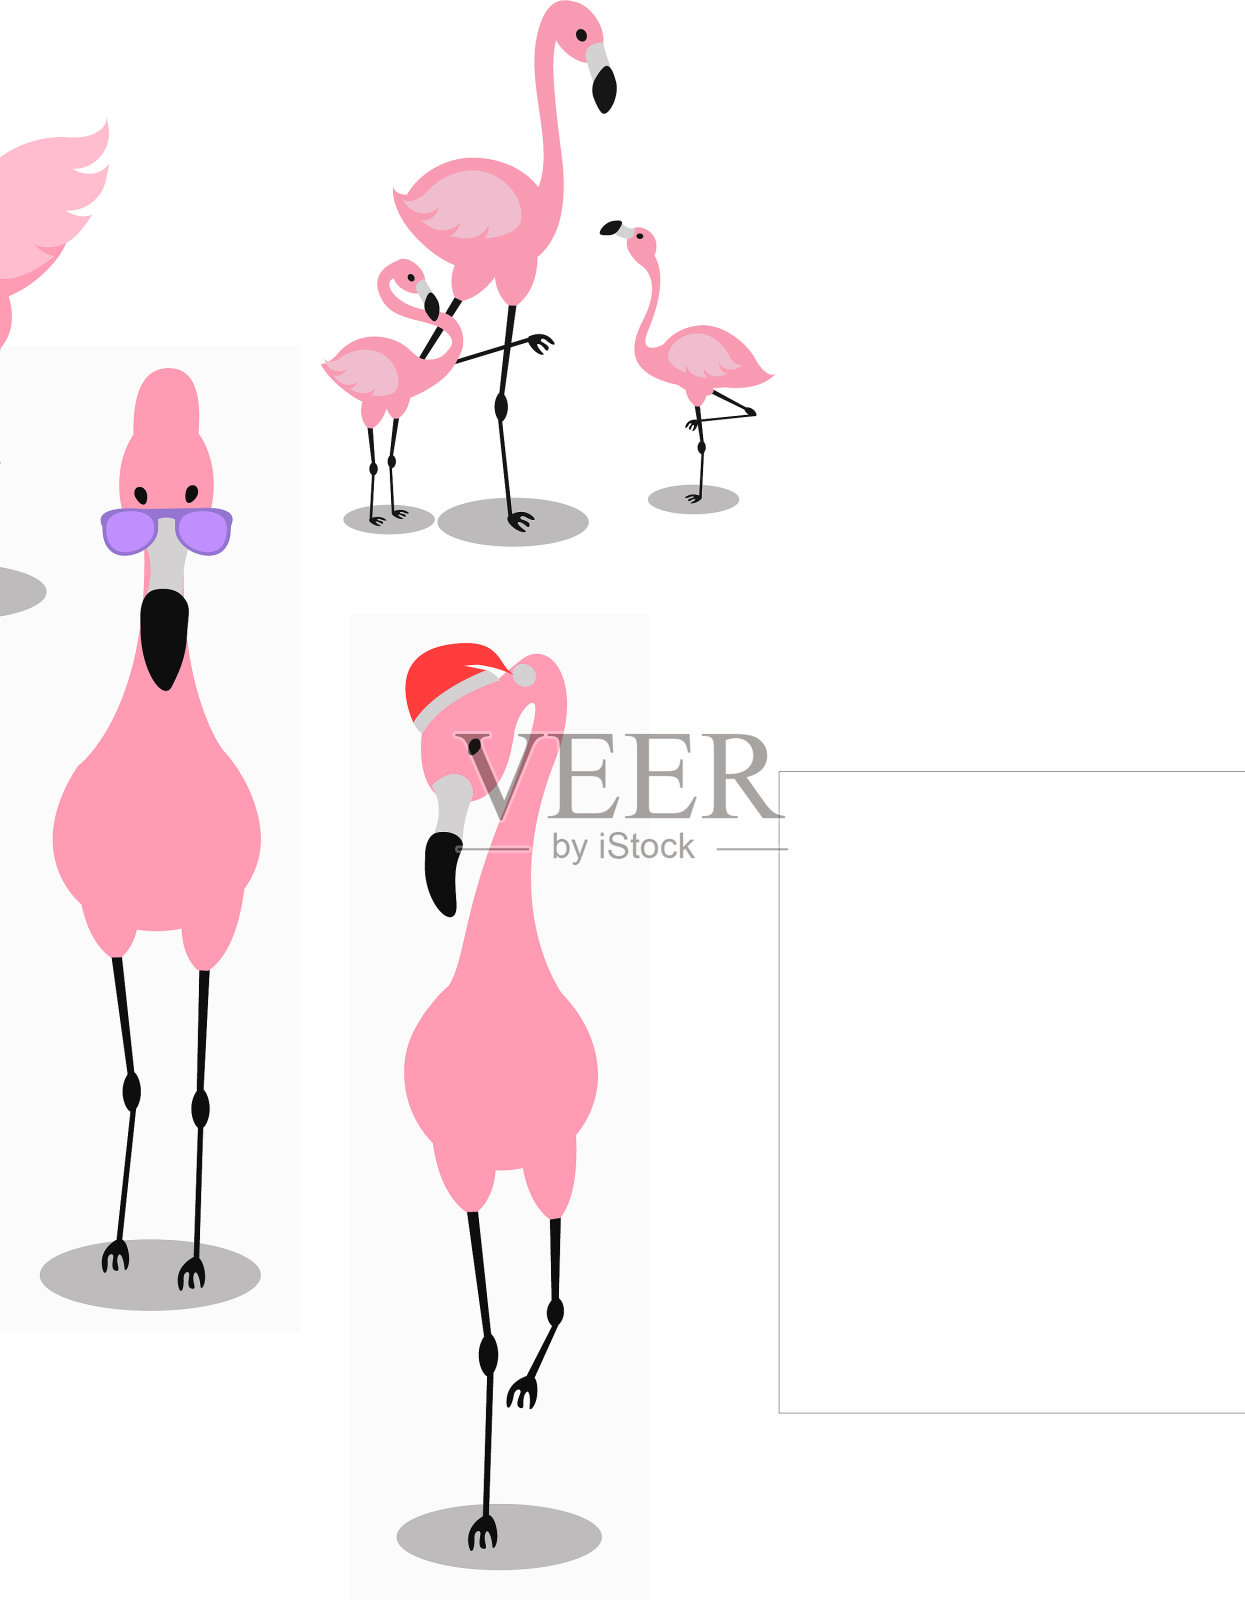 火烈鸟热带粉红色火烈鸟和奇异的鸟类插画图片素材